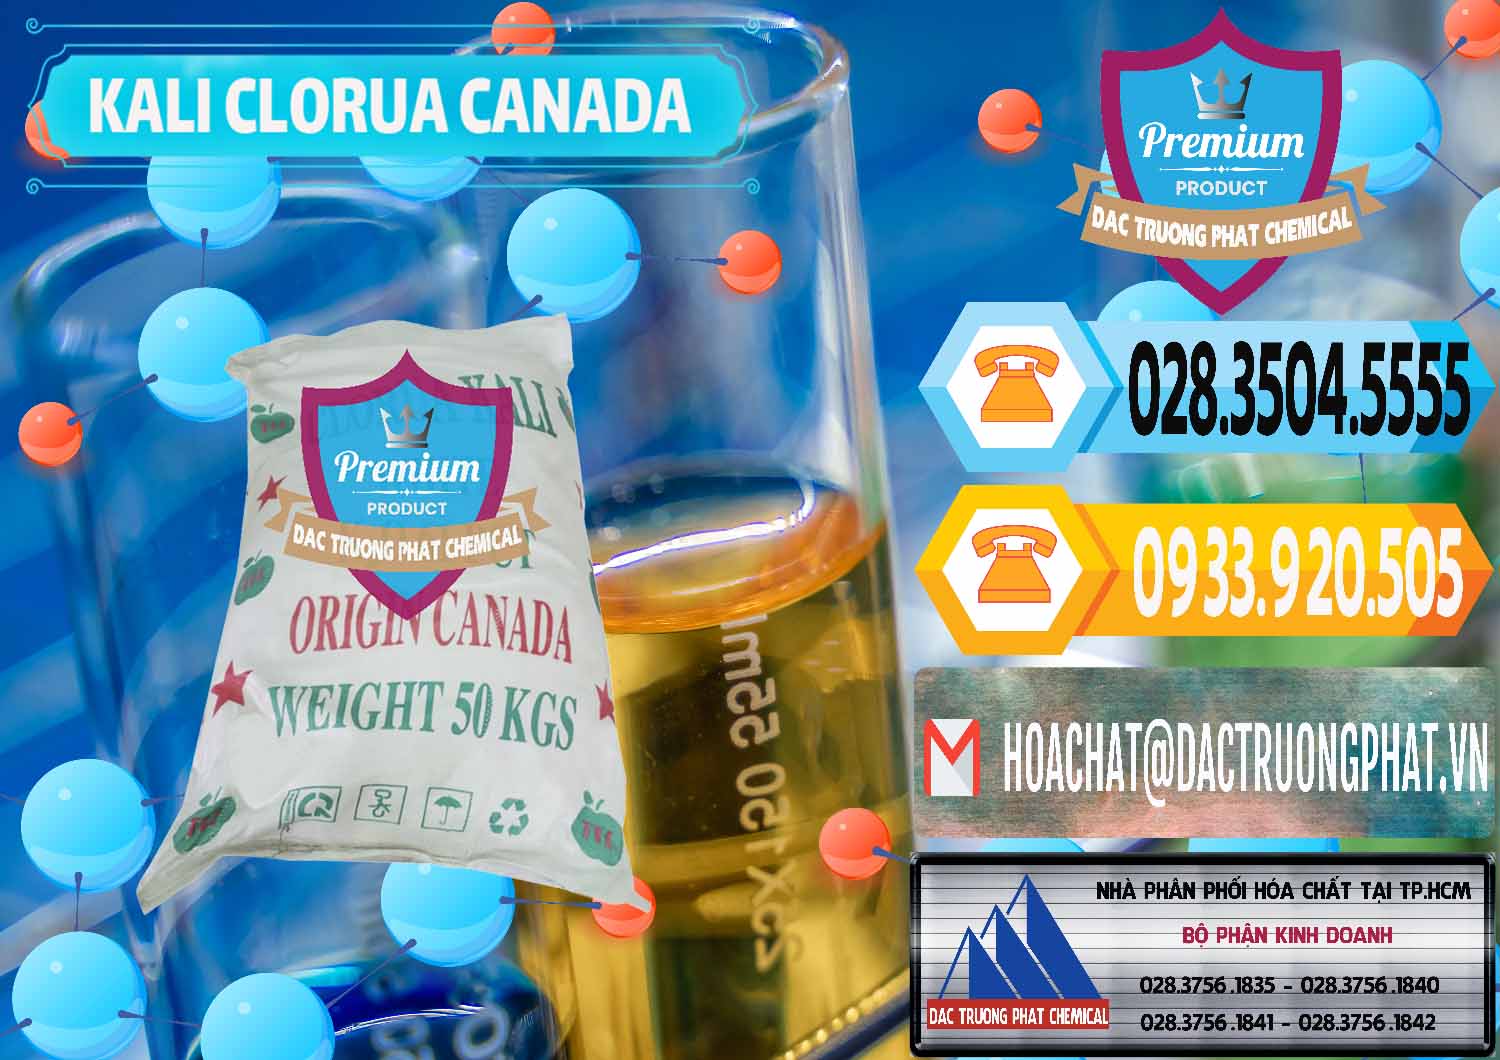 Công ty chuyên phân phối & bán KCL – Kali Clorua Trắng Canada - 0437 - Đơn vị phân phối và cung cấp hóa chất tại TP.HCM - hoachattayrua.net